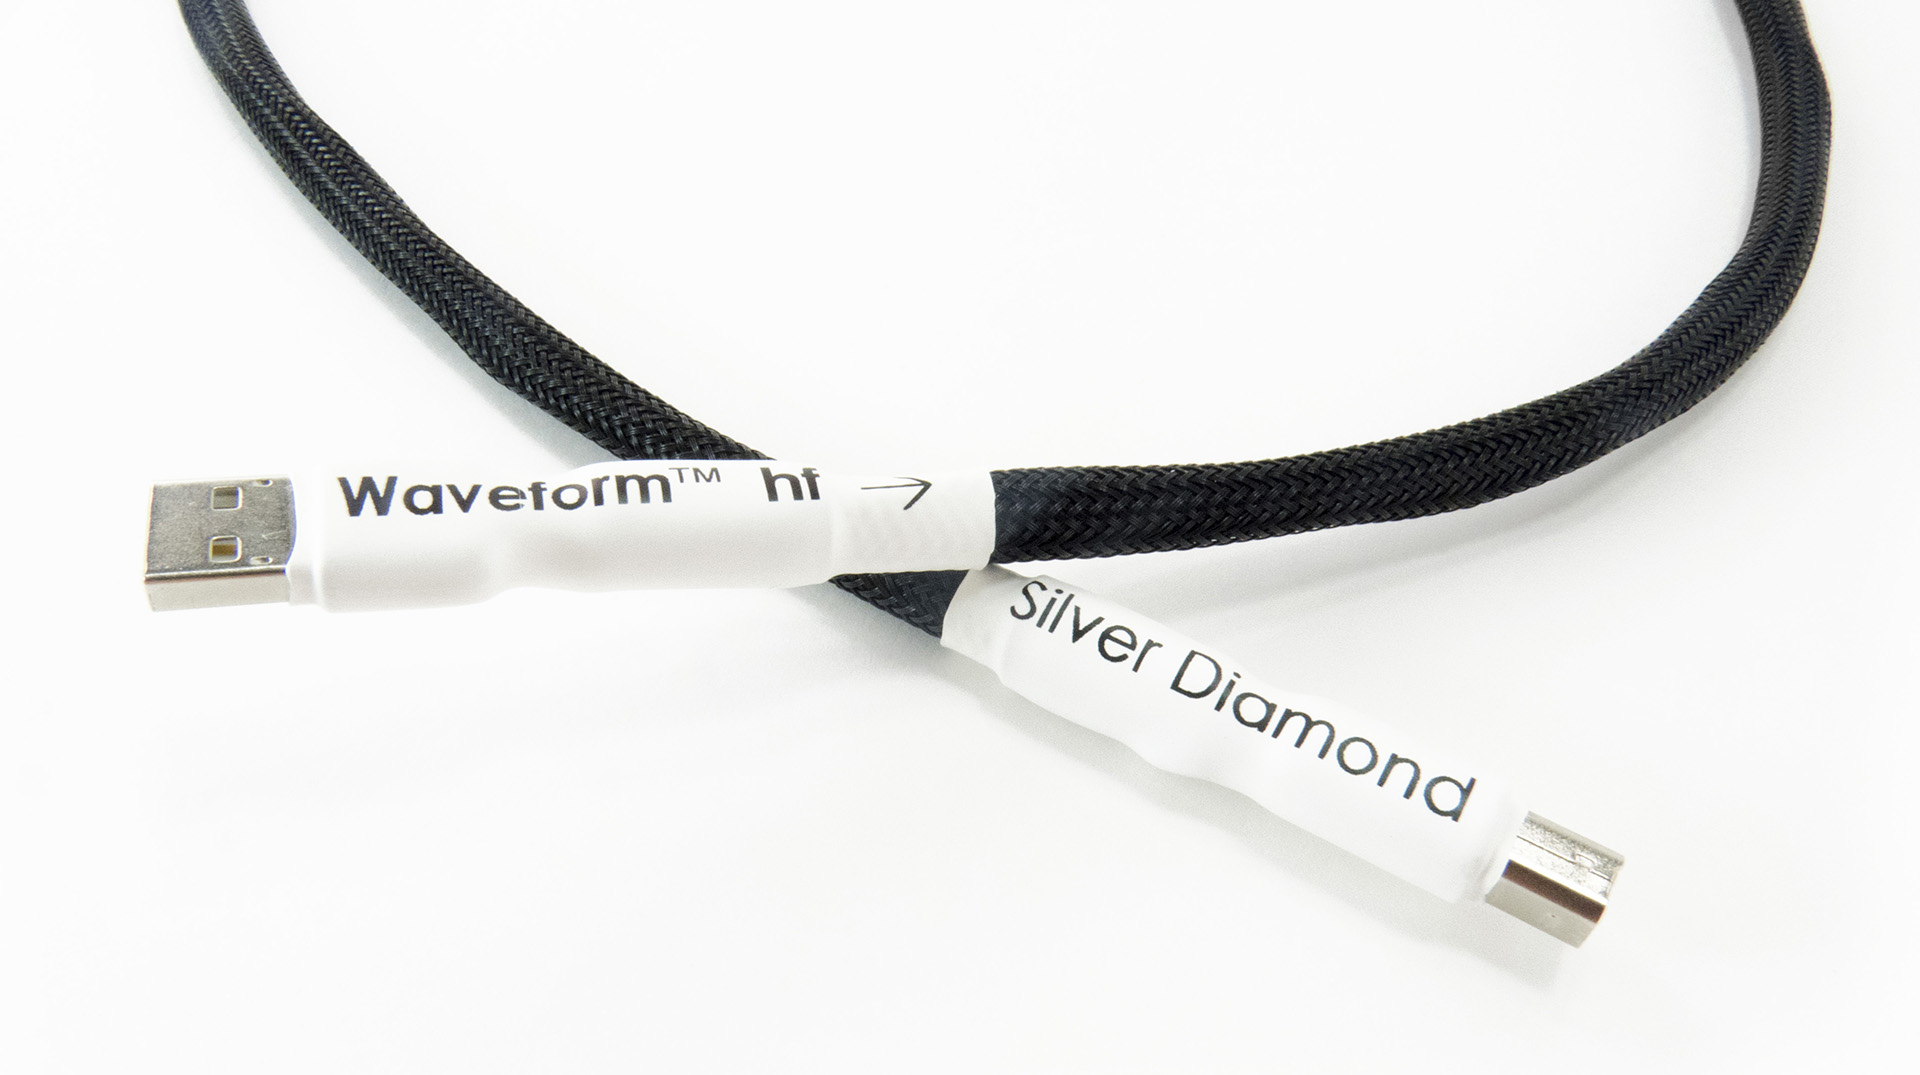 Tellurium Q - Neuauflage des Silver Diamond USB - jetzt mit Waveform™ hf